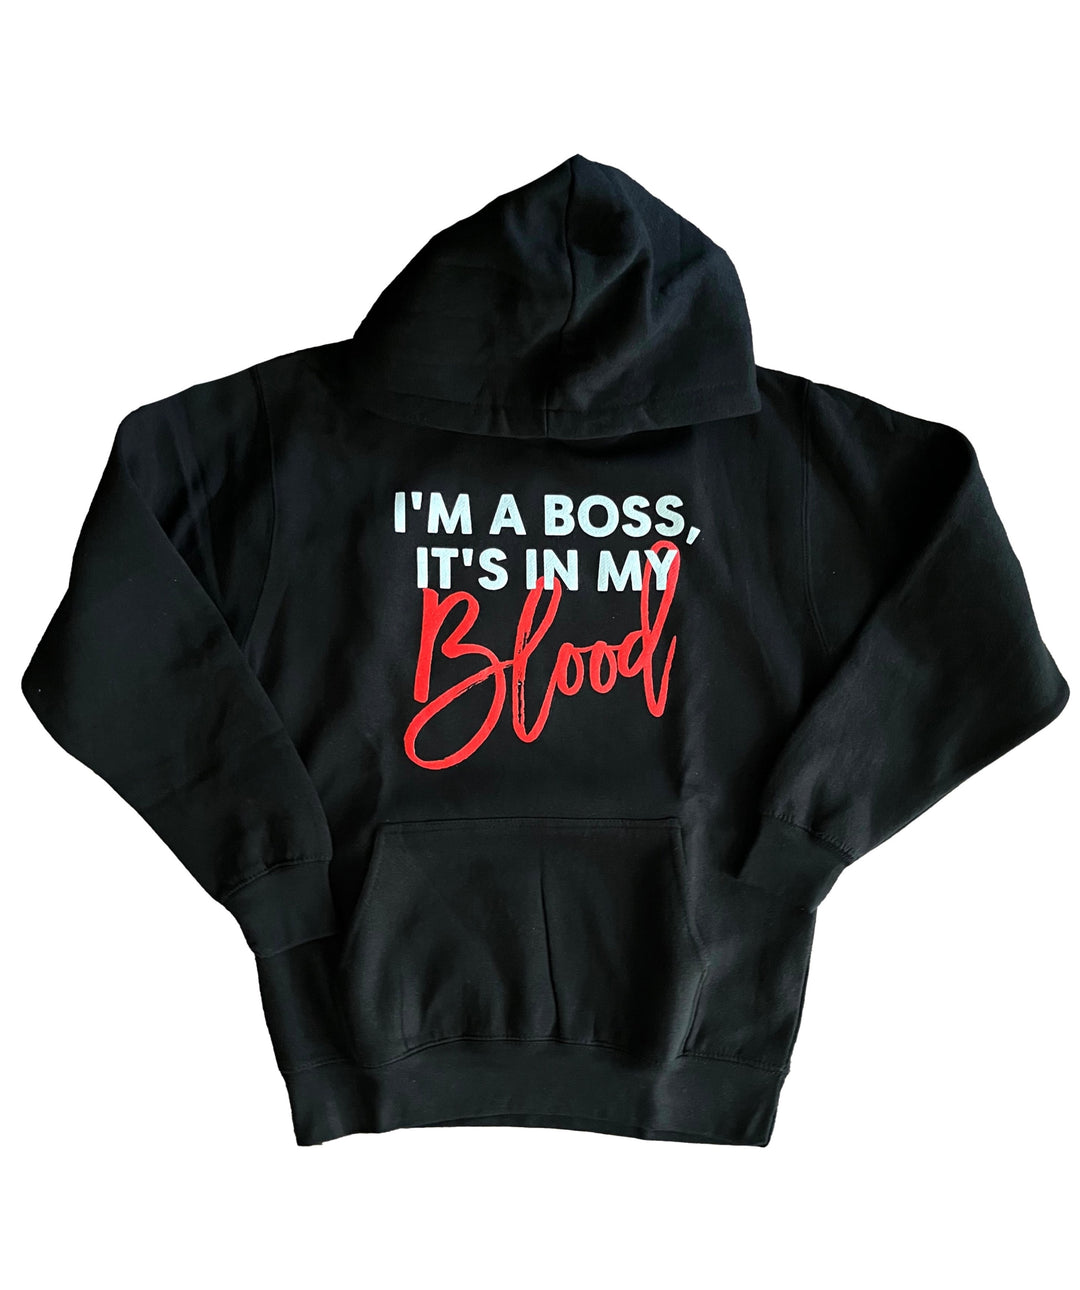 I'm A Boss, It's In My Blood Hoody